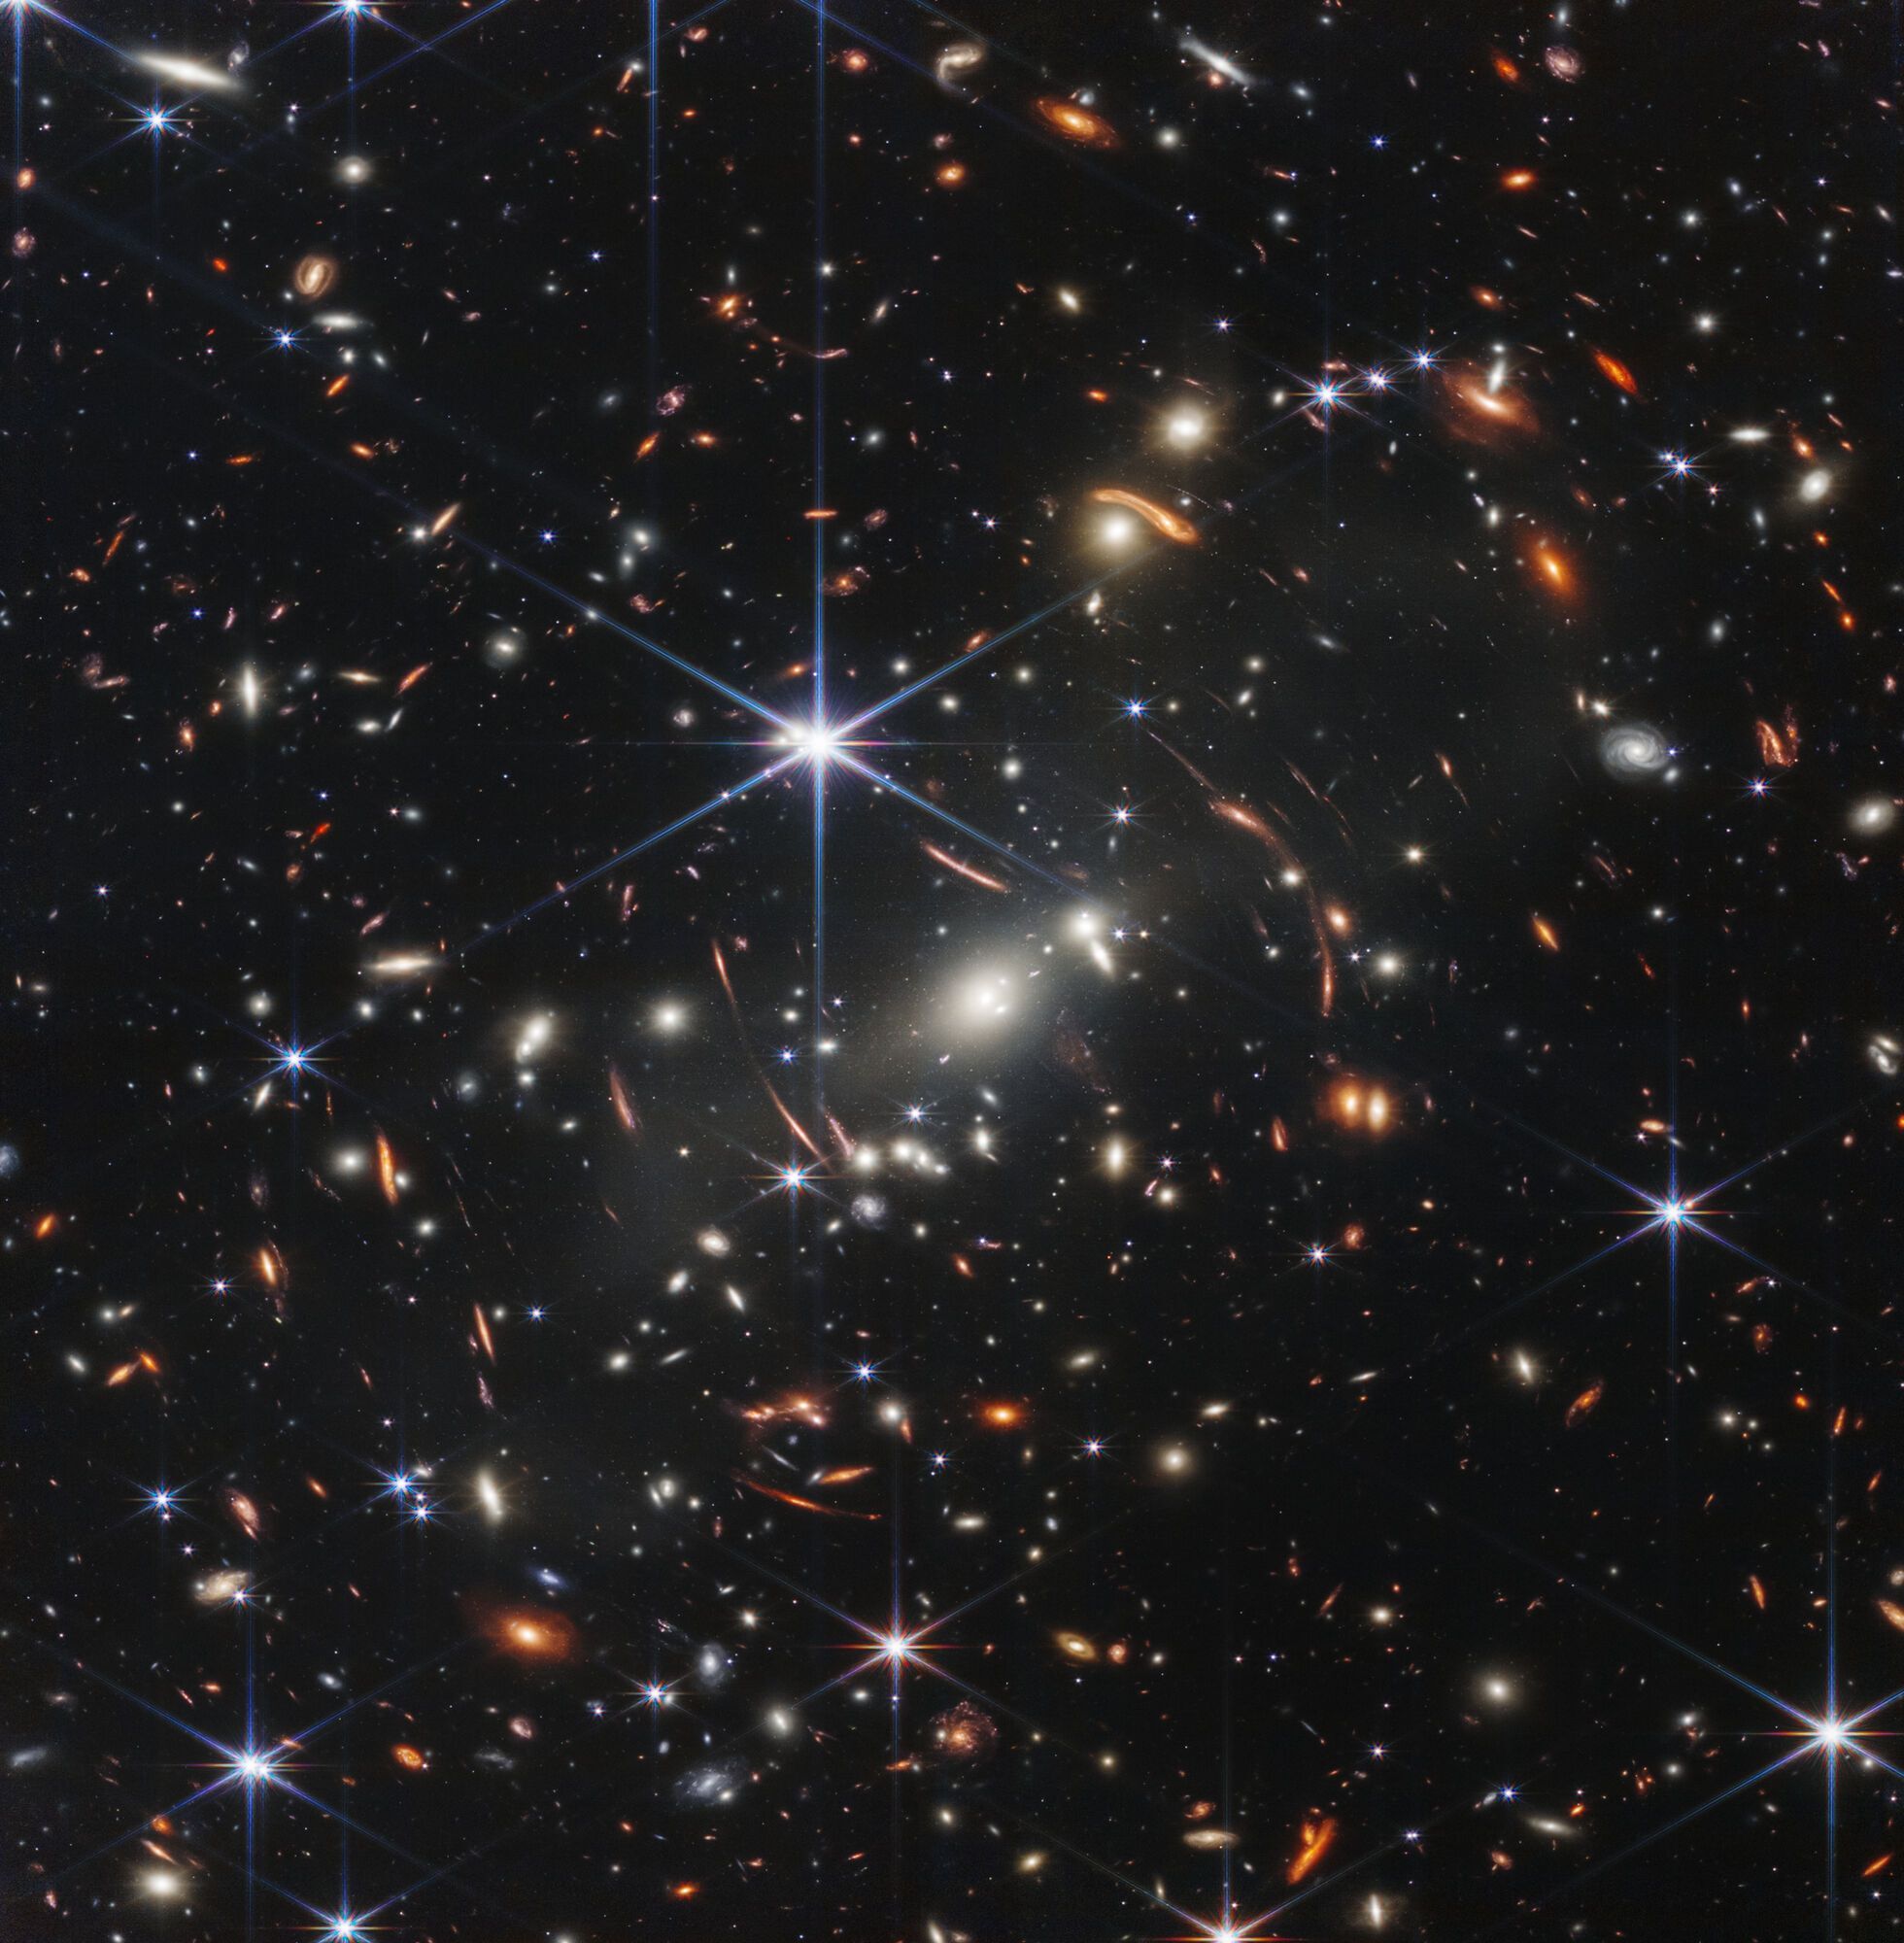 SMACS 0723, скопление галактик в миллиардах световых лет от Земли.